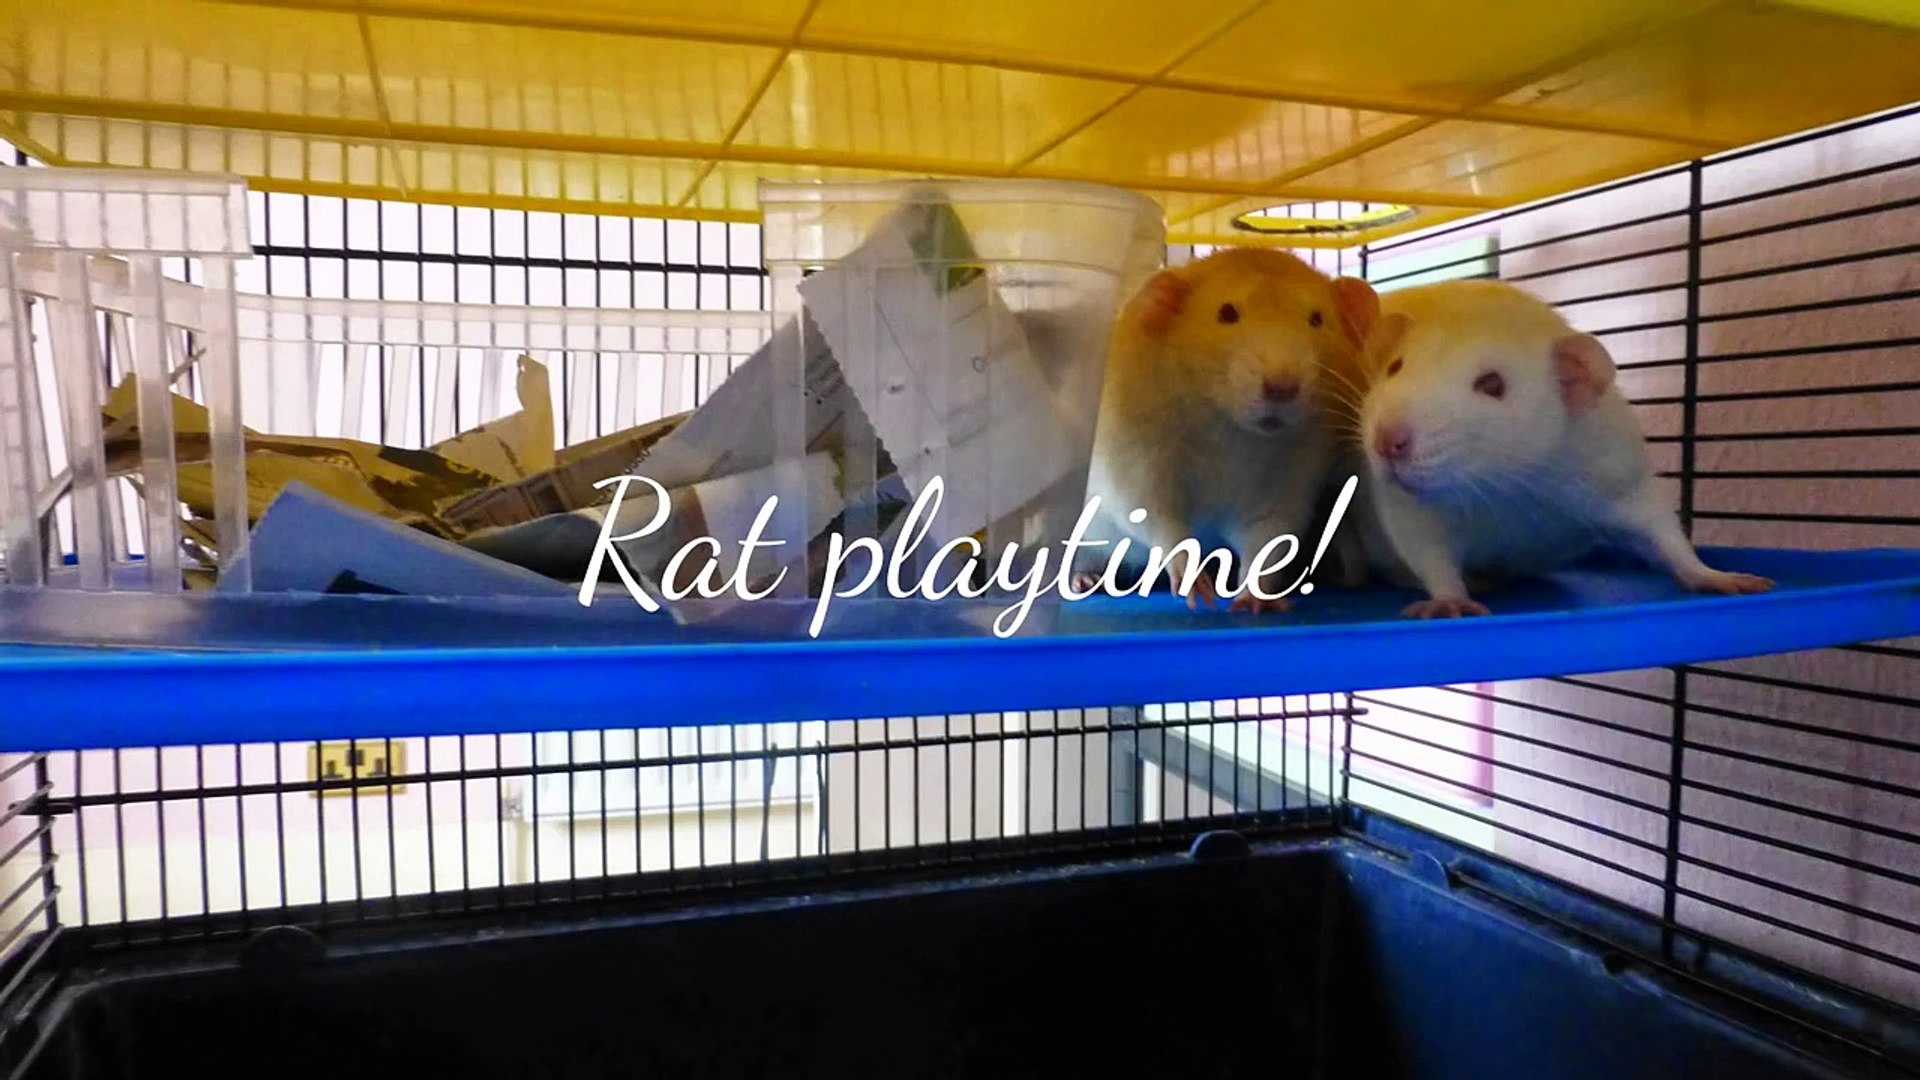 Rat playtime!